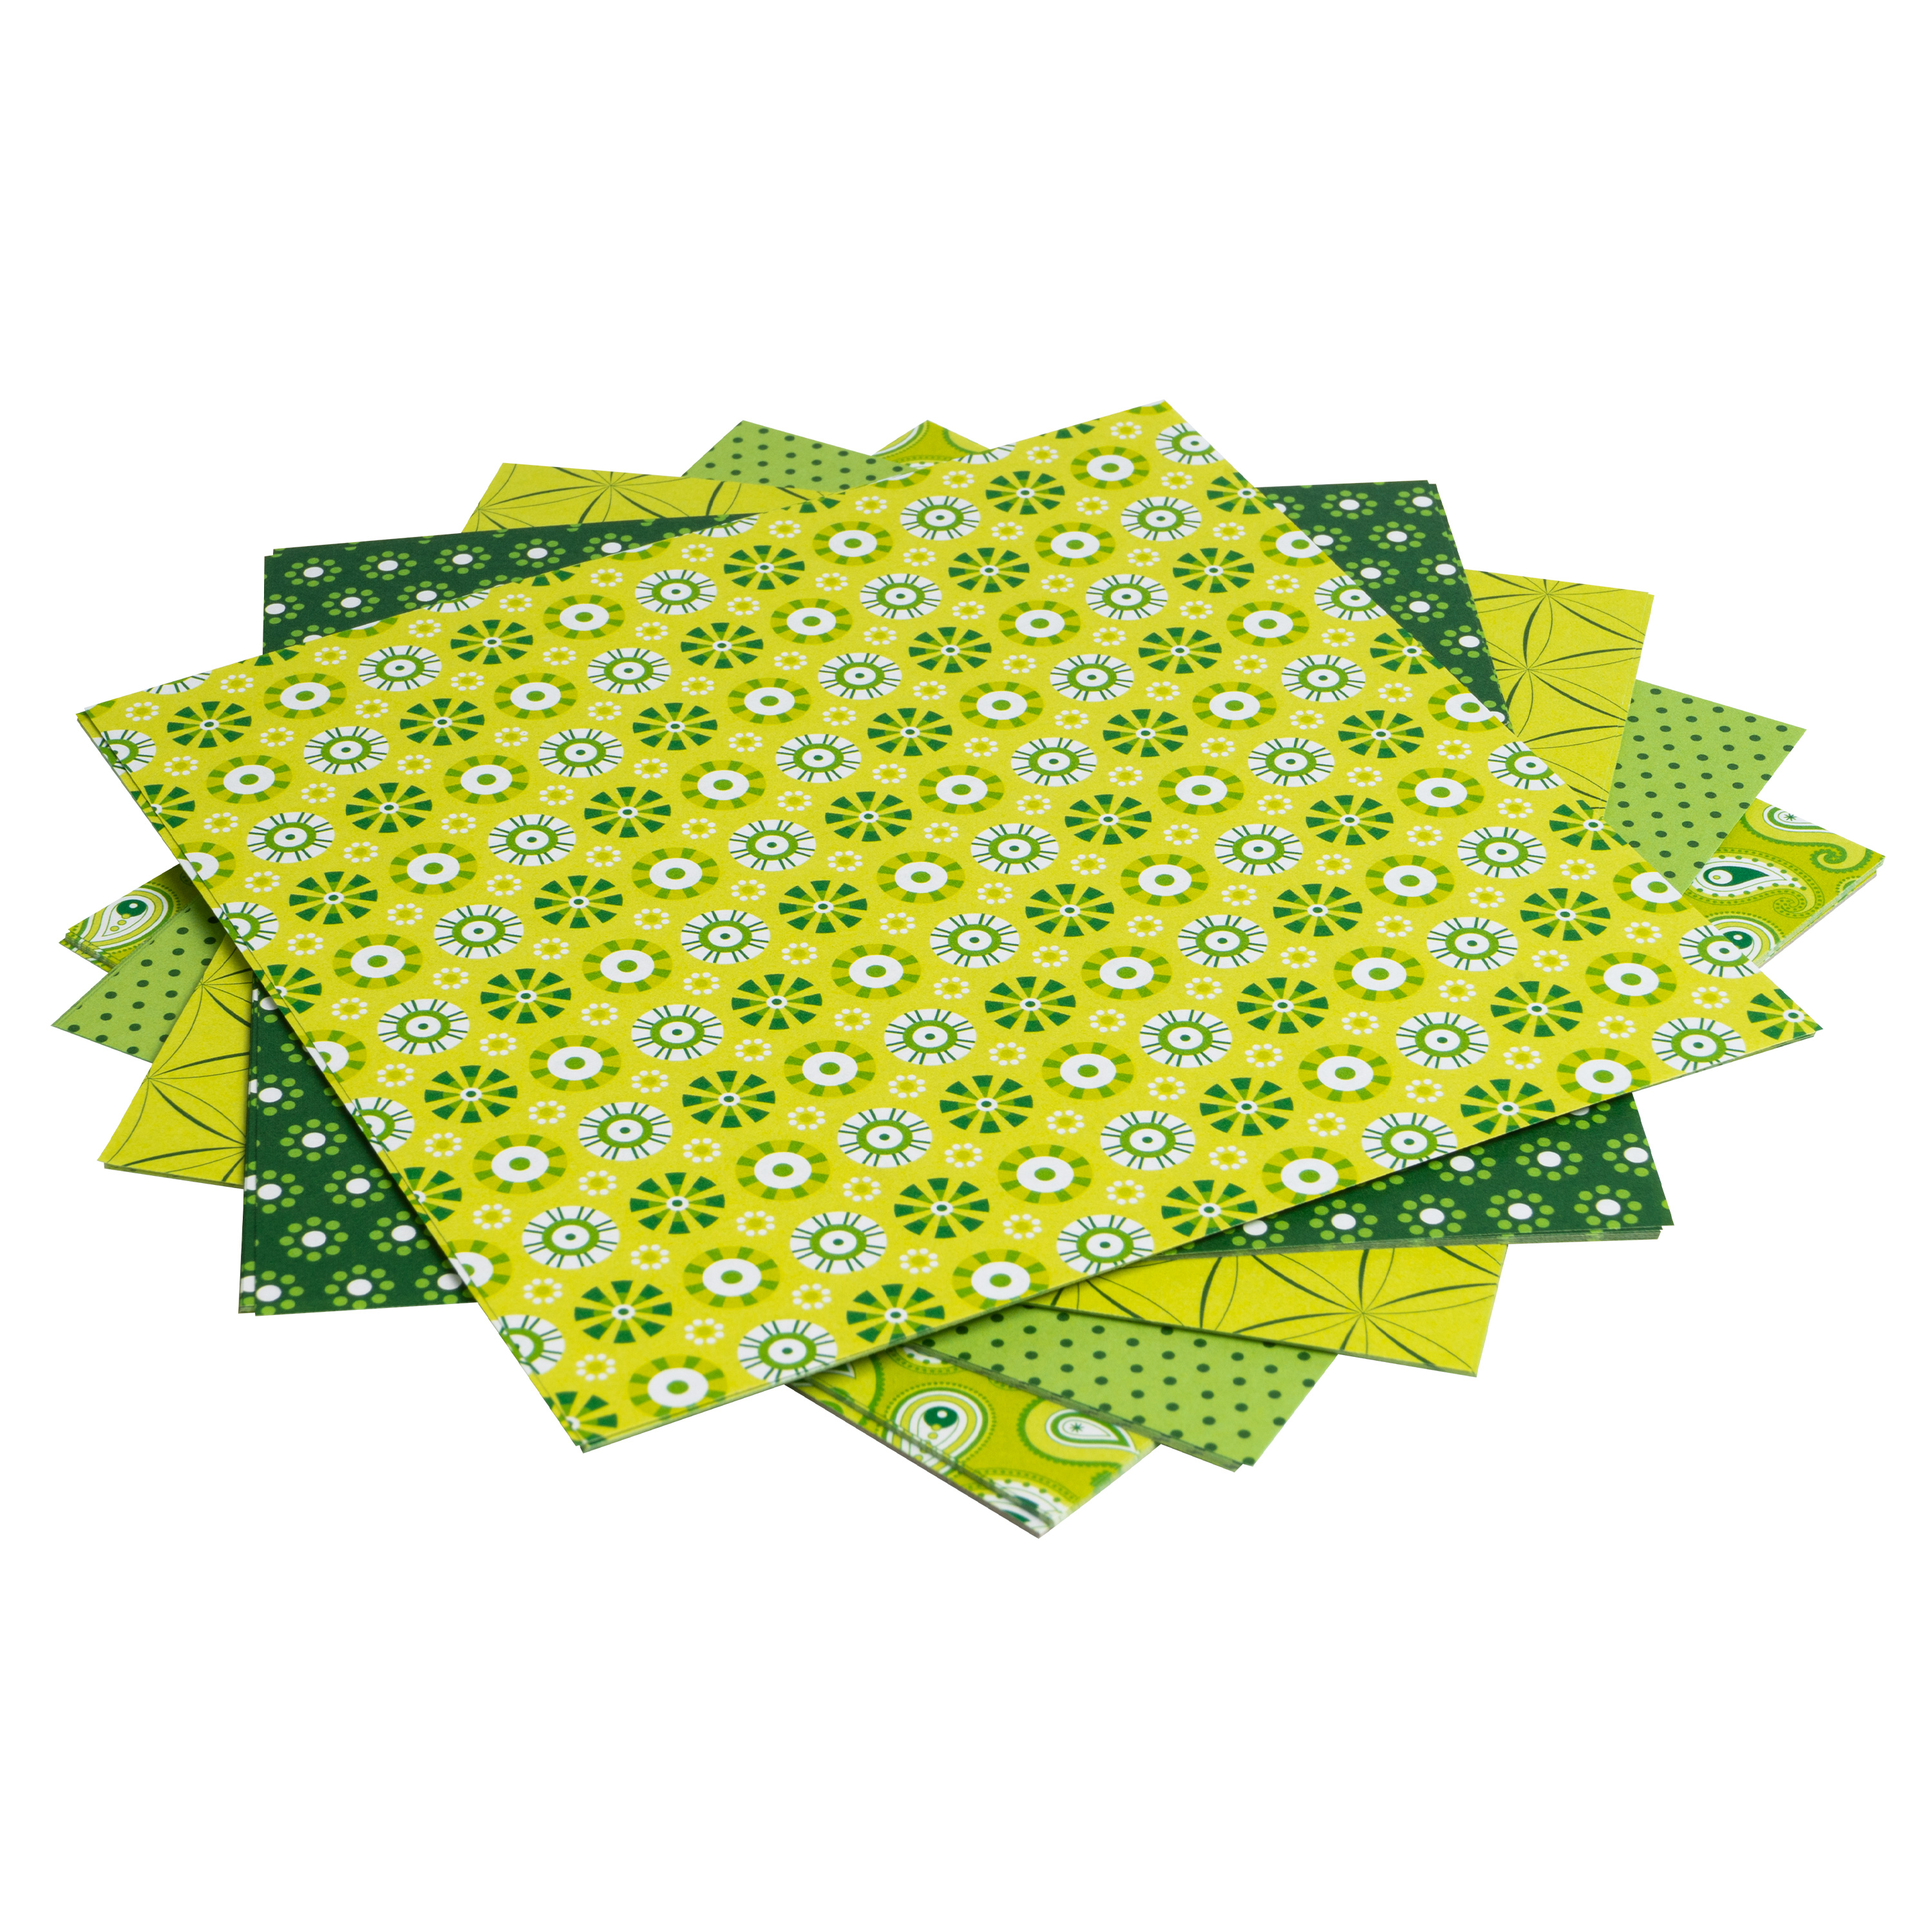 Origami Motiv-Faltblätter 'Basics', 15 x 15 cm, grün